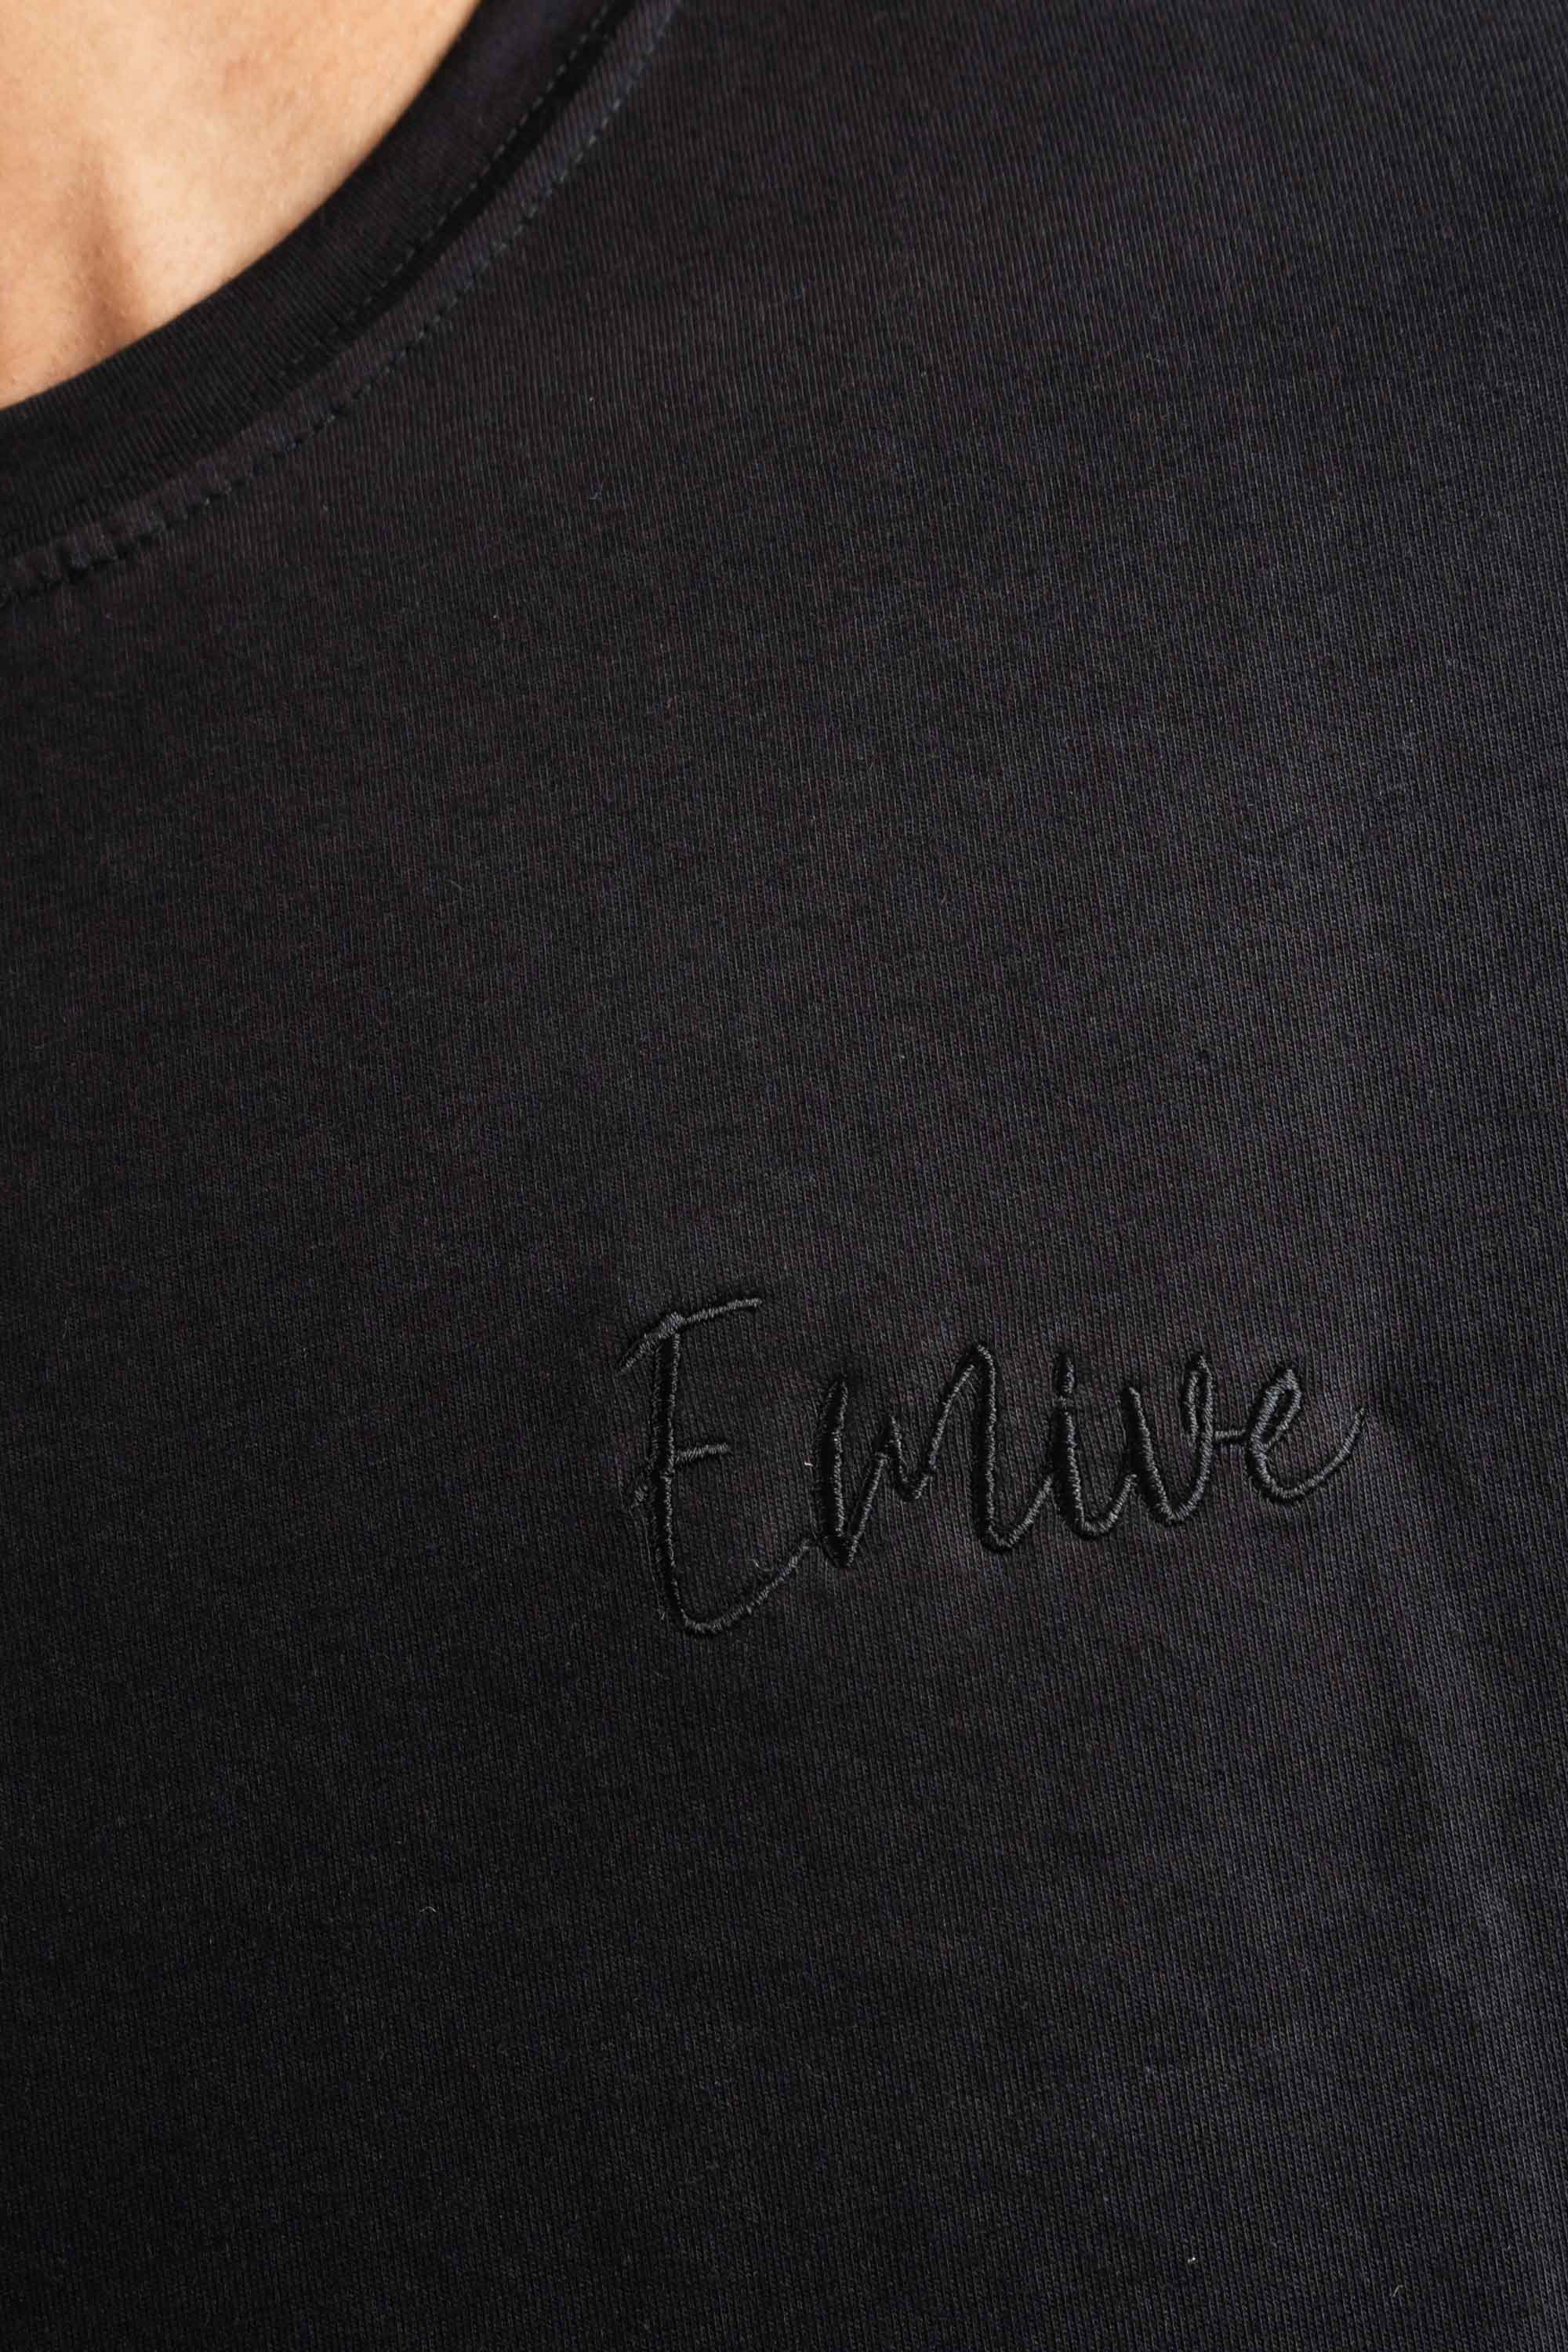 Camiseta Emive Long New Preto